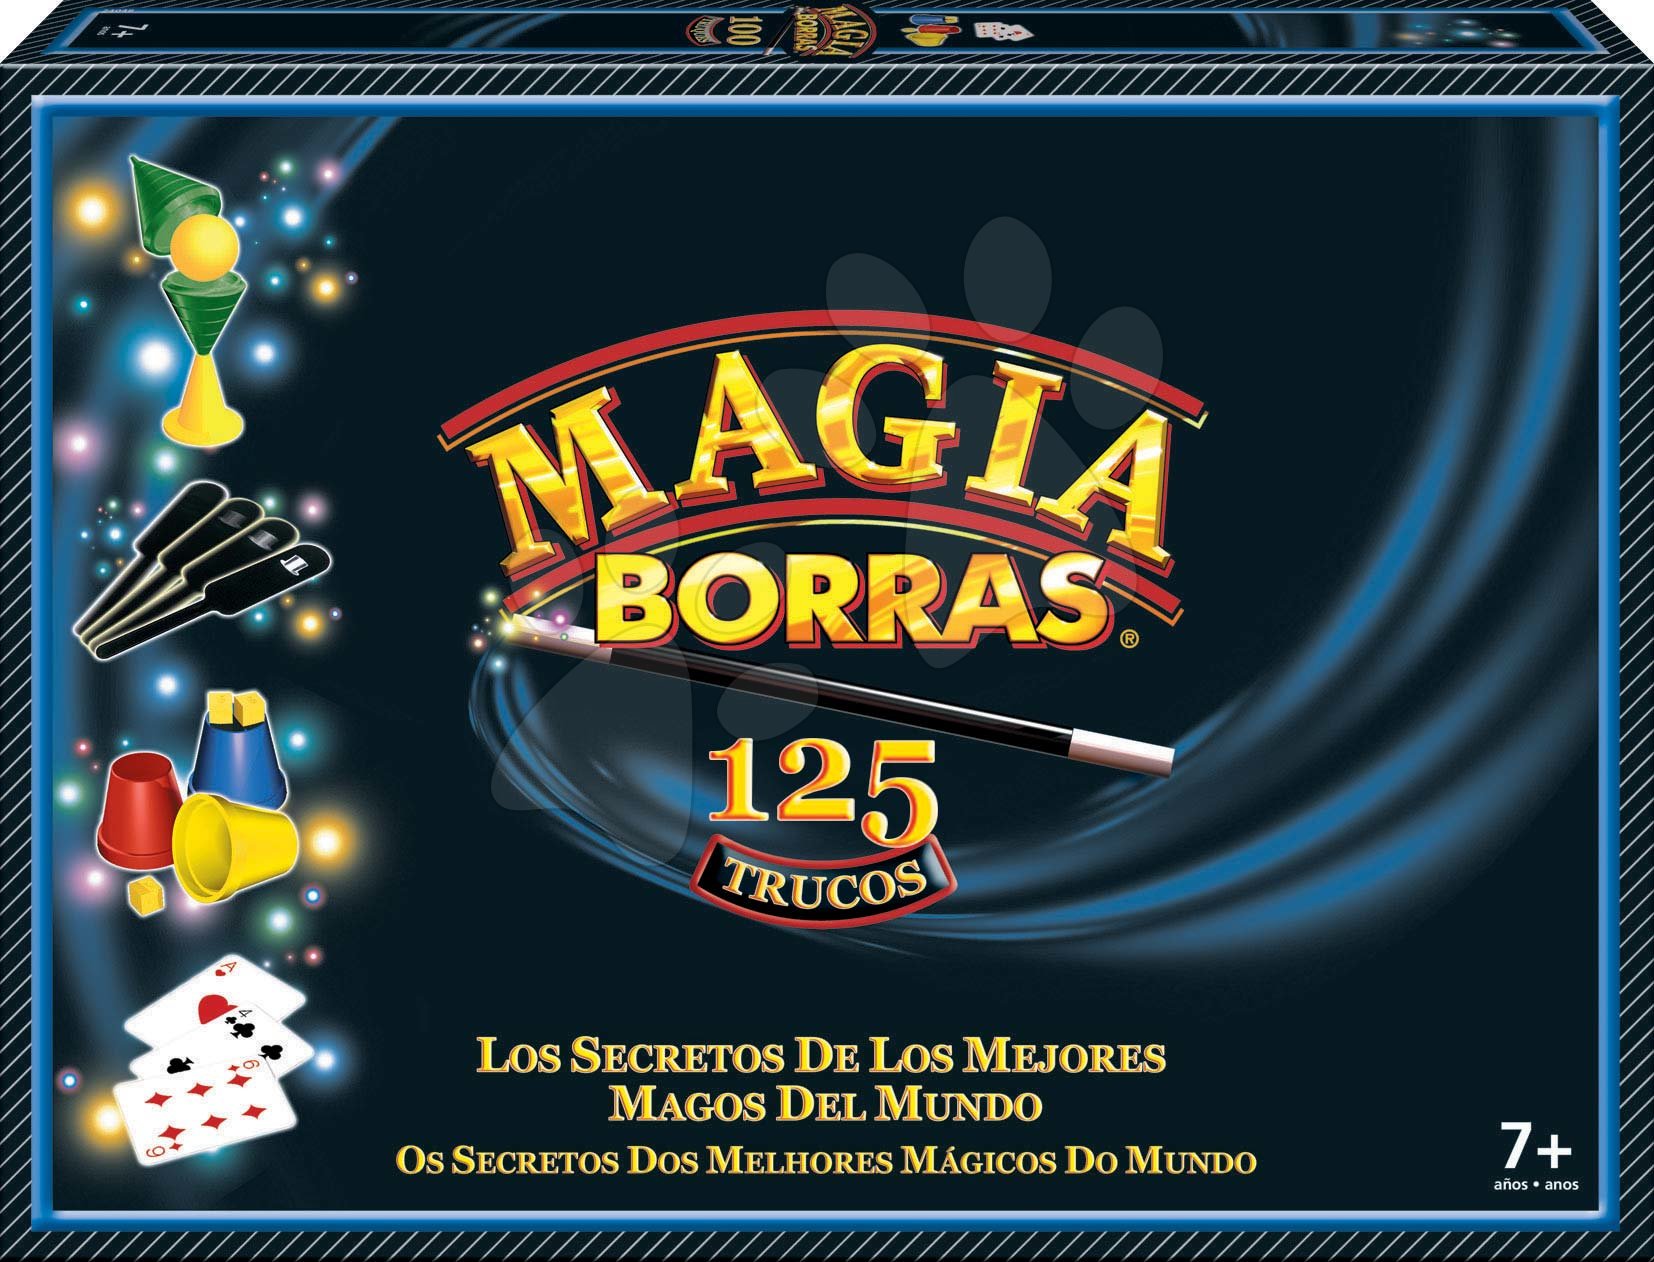 Kúzelnícke hry a triky Magia Borras Classic Educa 125 hier španielsky a katalánsky od 7 rokov